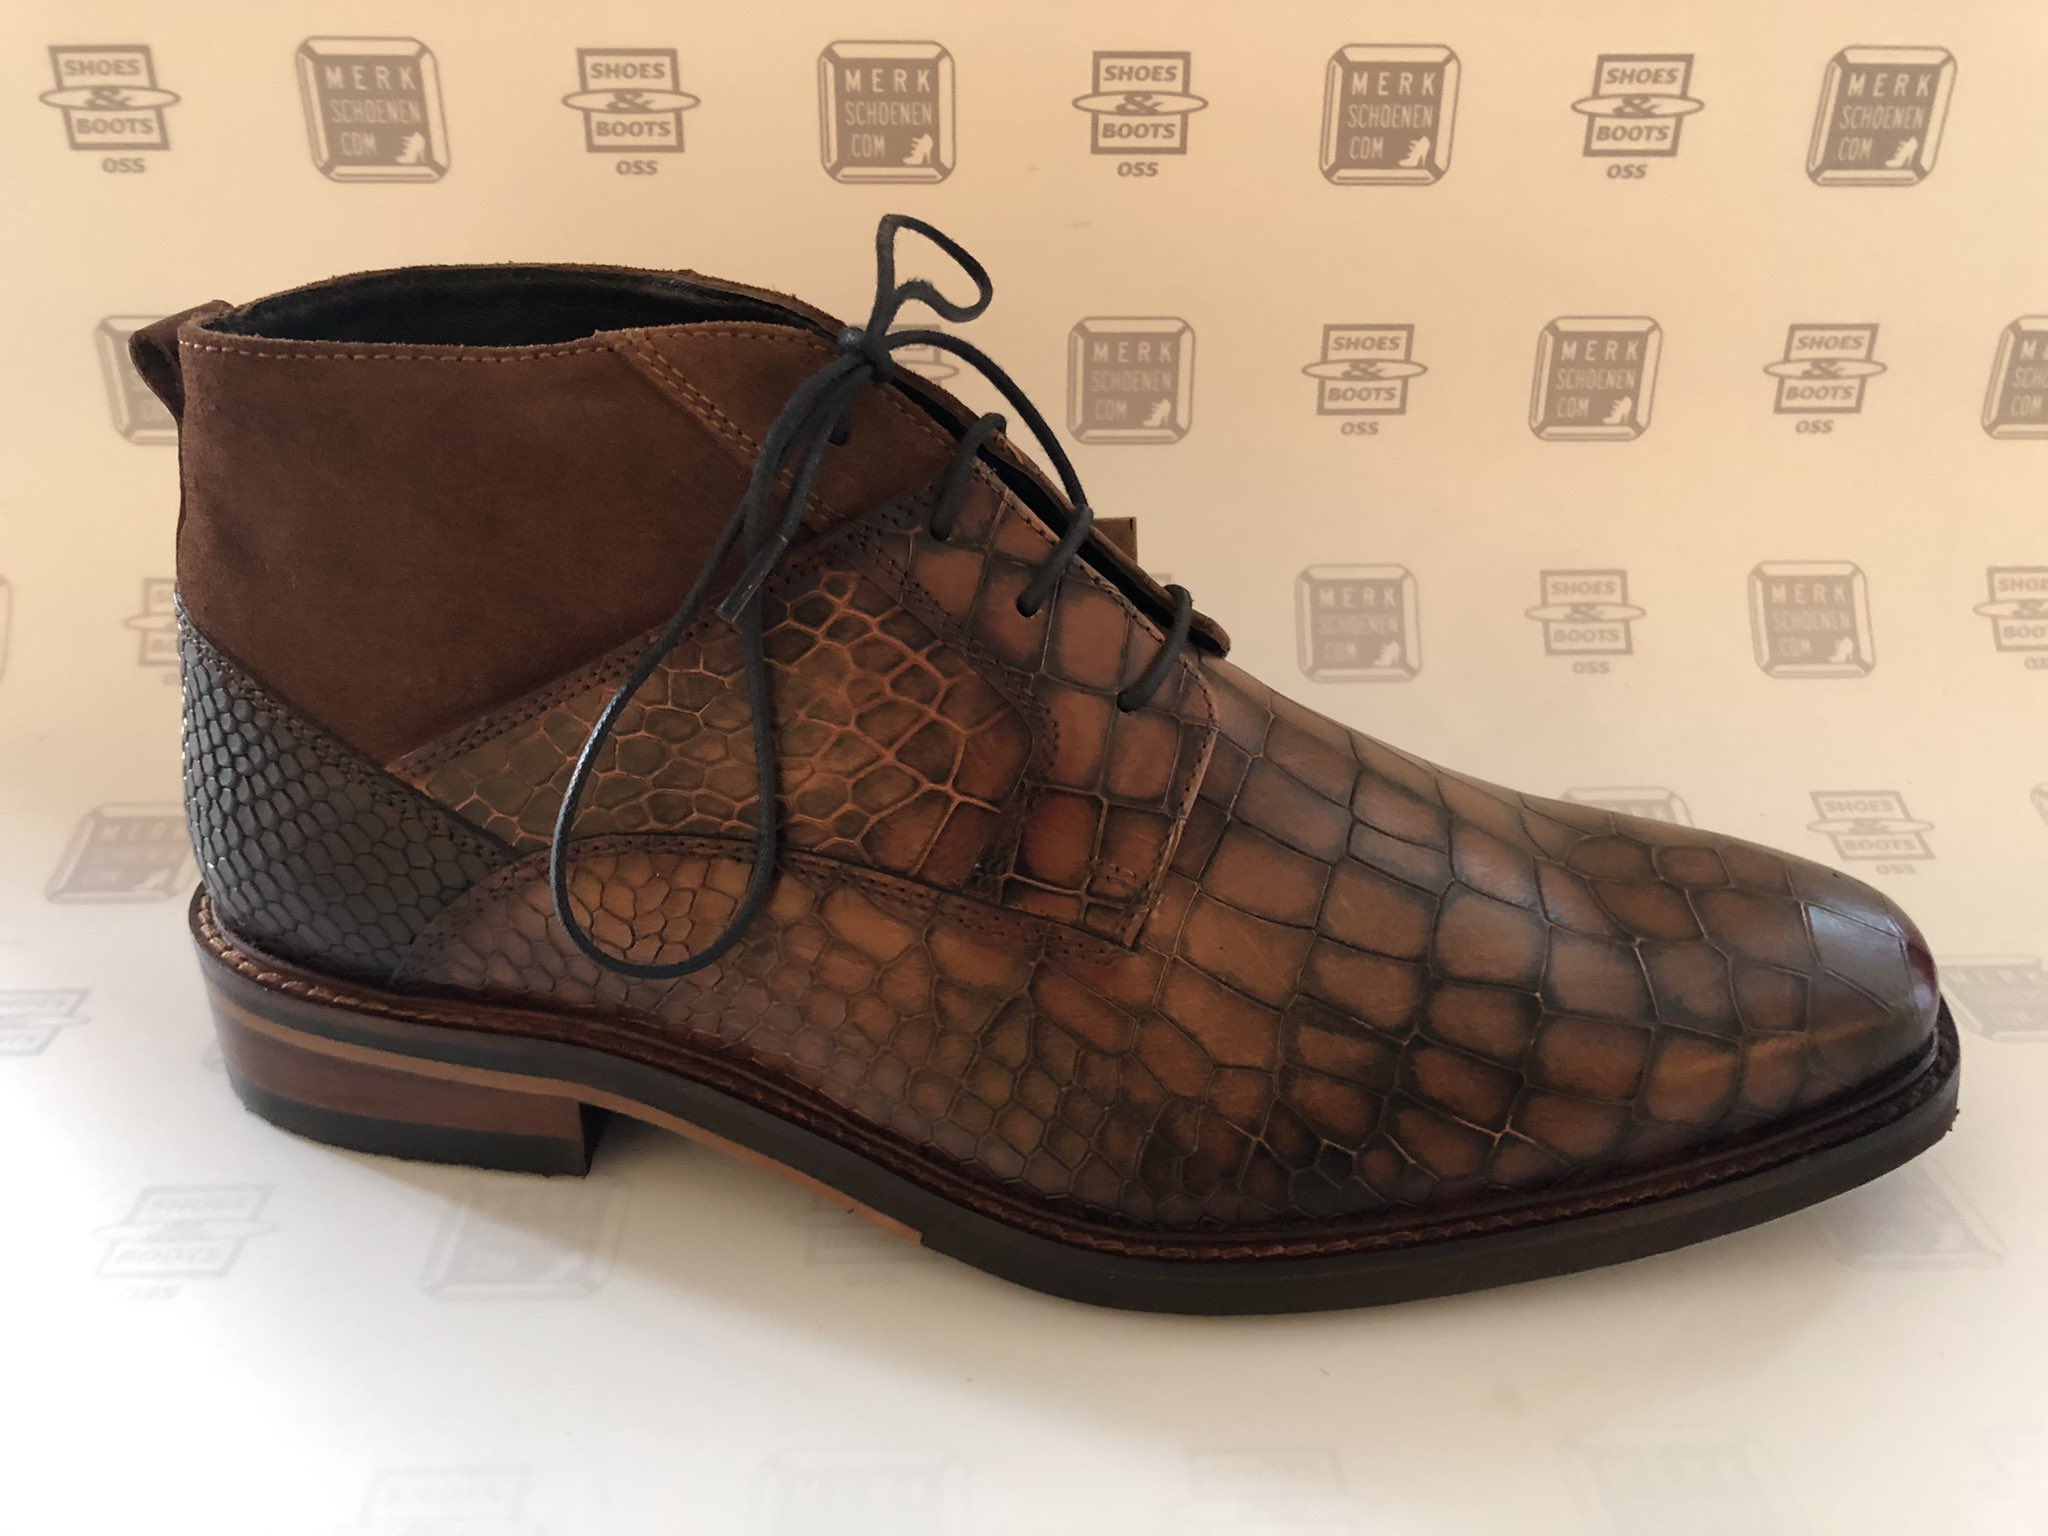 Rally gebruik Detective merkschoenen.com on Twitter: "Mooie nieuwe (heren)schoenen 👞 toegevoegd  van: Jens7en Men Shoes - Boots. In diverse kleuren en modellen, laag en  mid. Kijk op de site: https://t.co/zO59snwqTY #merkschoenen Natuurlijk bent  u ook